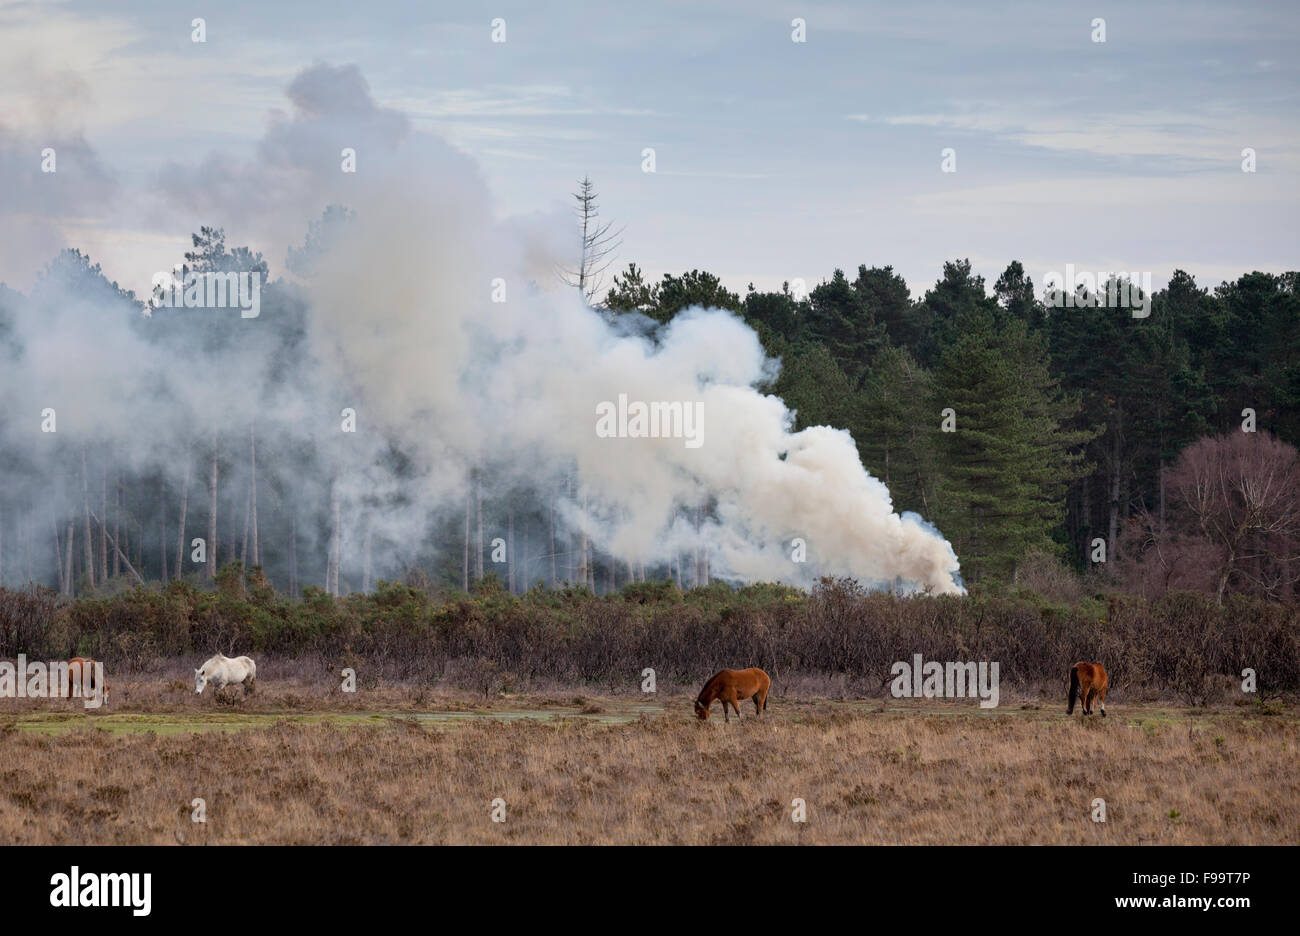 El humo de la quema controlada en el nuevo bosque utilizada para administrar el bosque Foto de stock